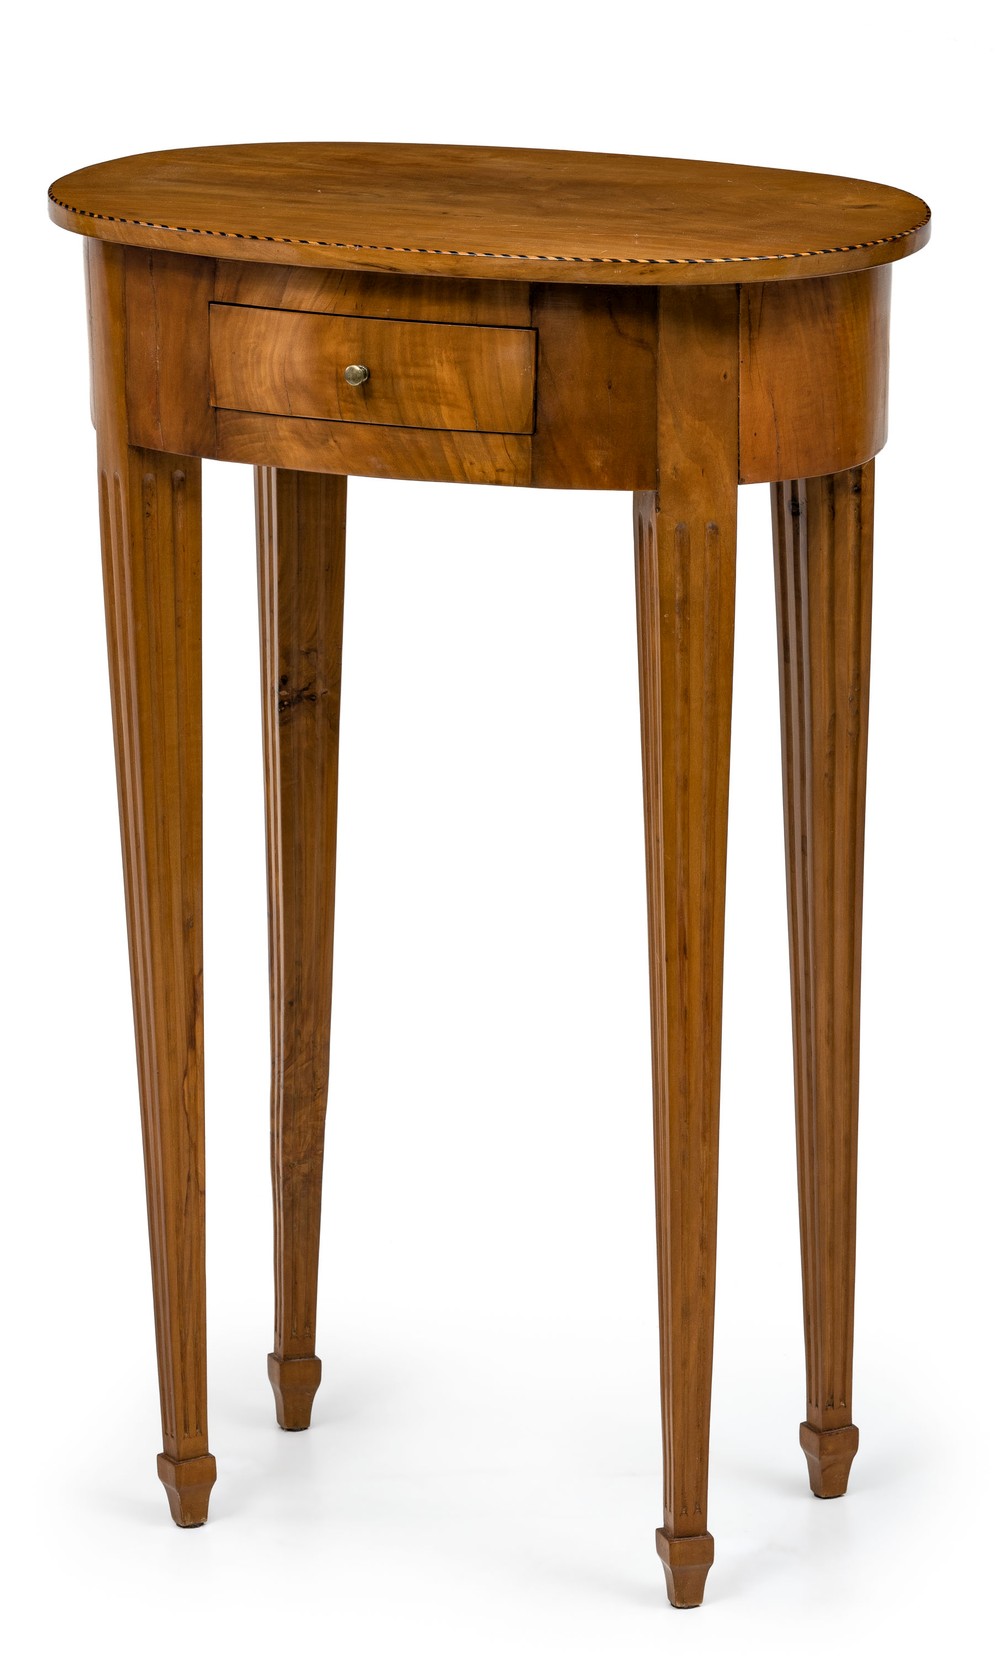 Ovales Biedermeier-Tischchen Süddeutsch, um 1810-20